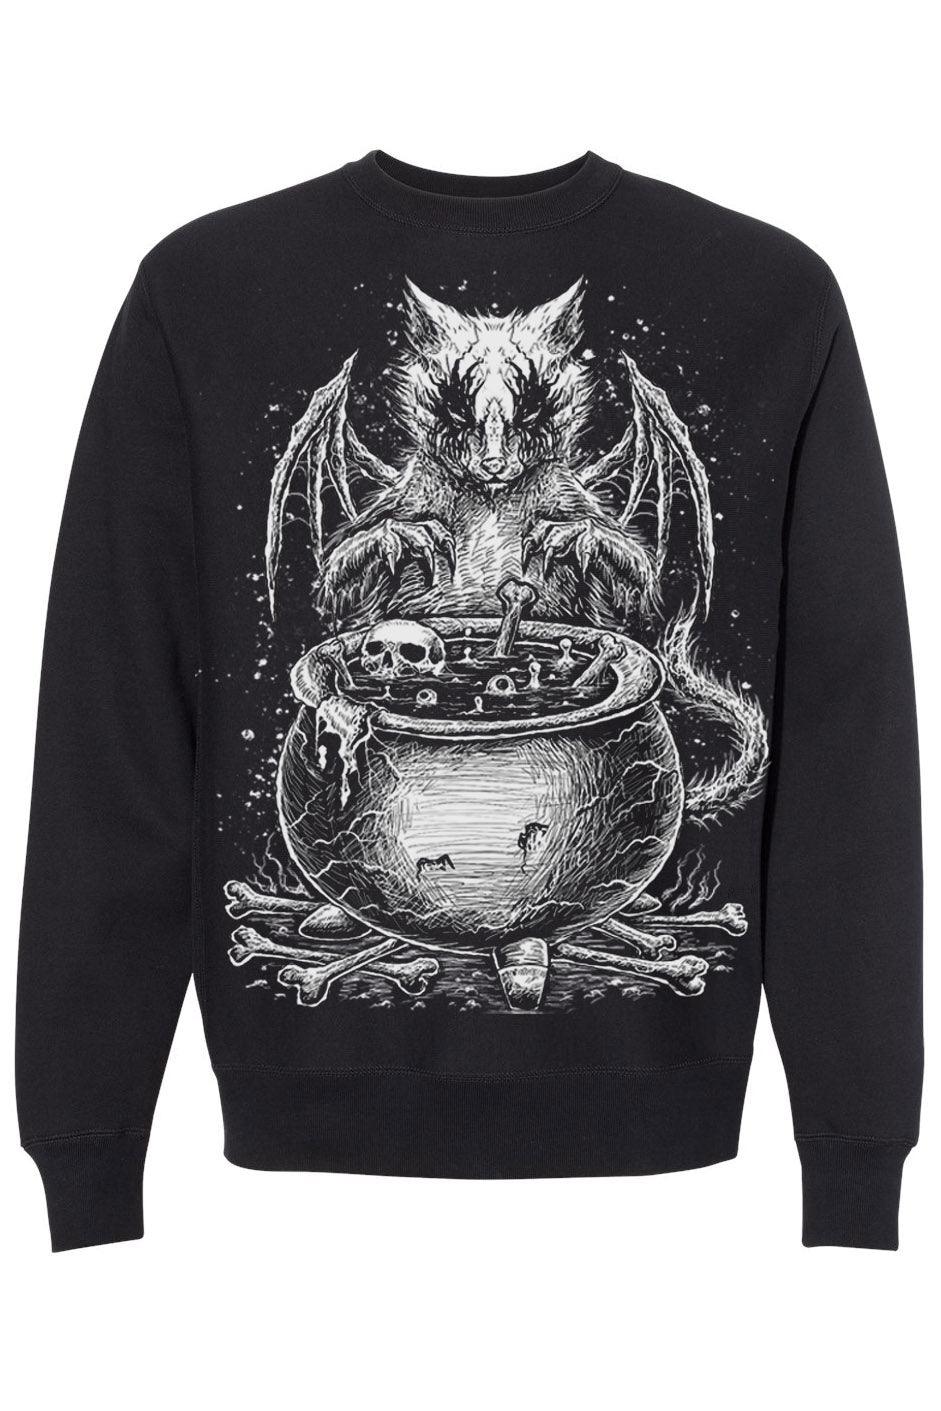 VampireFreaks Conjuring Cat Sweatshirt - VampireFreaks